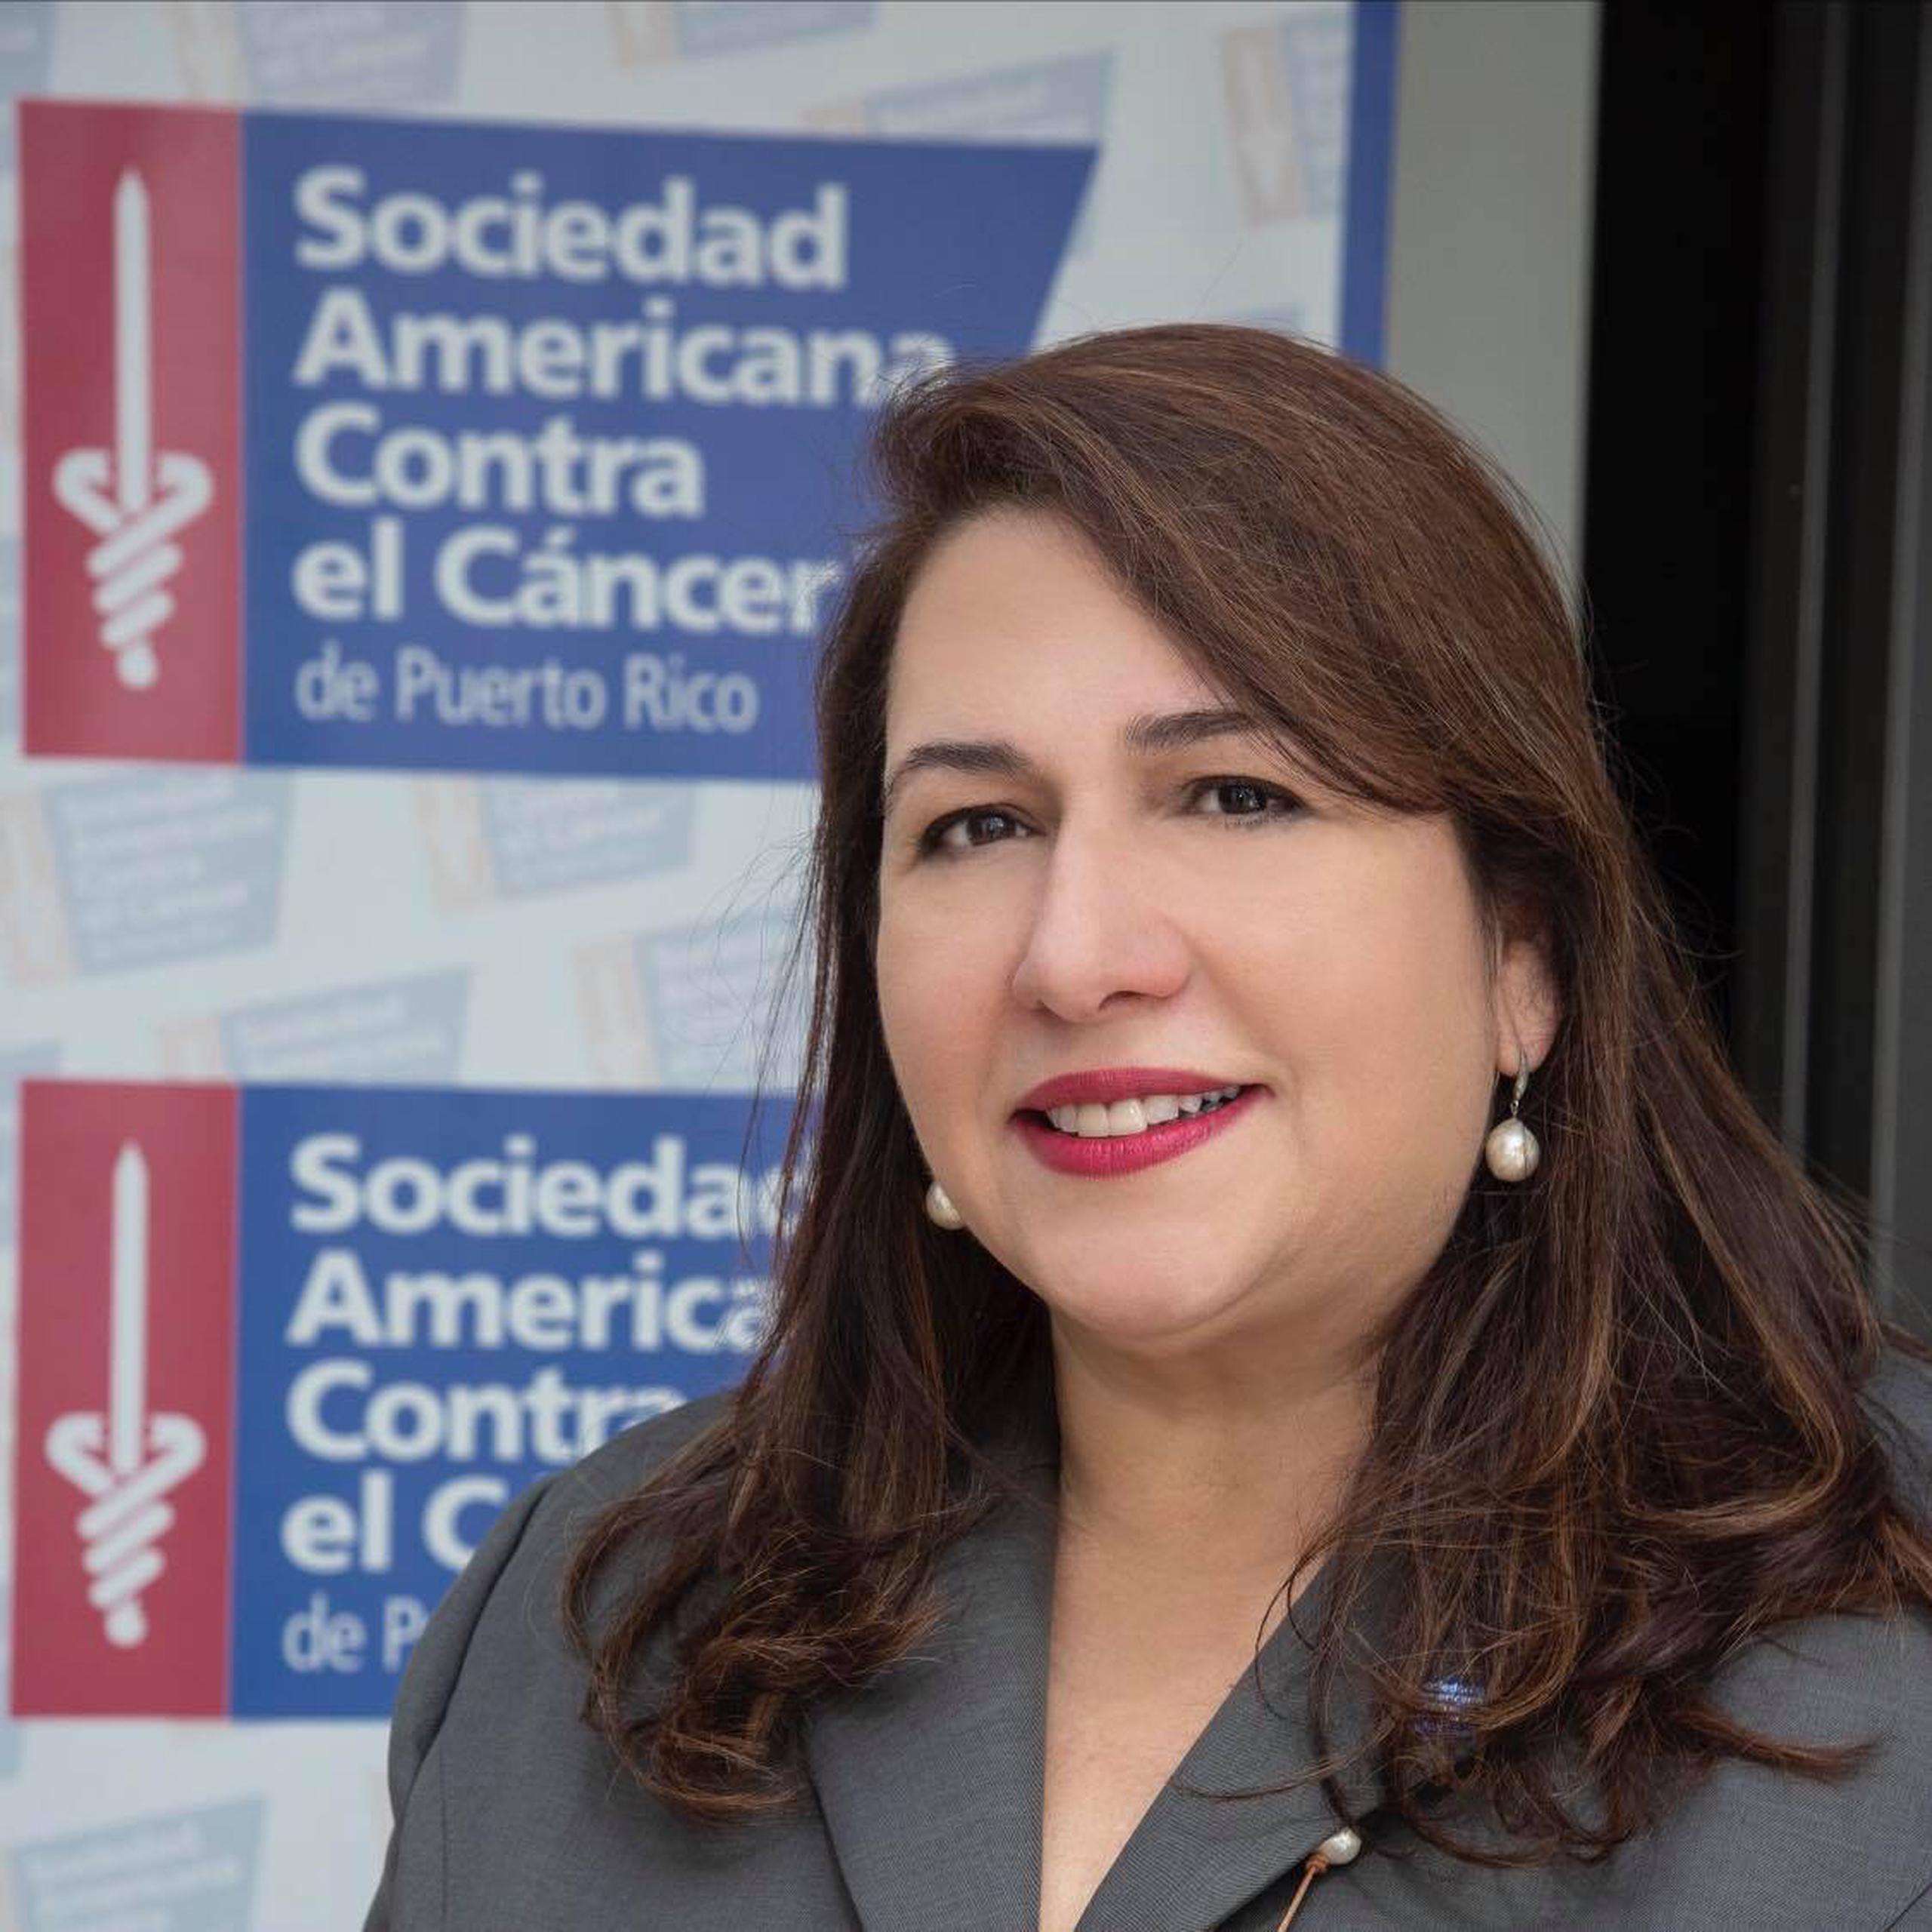 Dra. Lillian Santos Rivera, principal oficial ejecutiva de la Sociedad Americana contra el Cáncer, Capítulo de Puerto Rico.